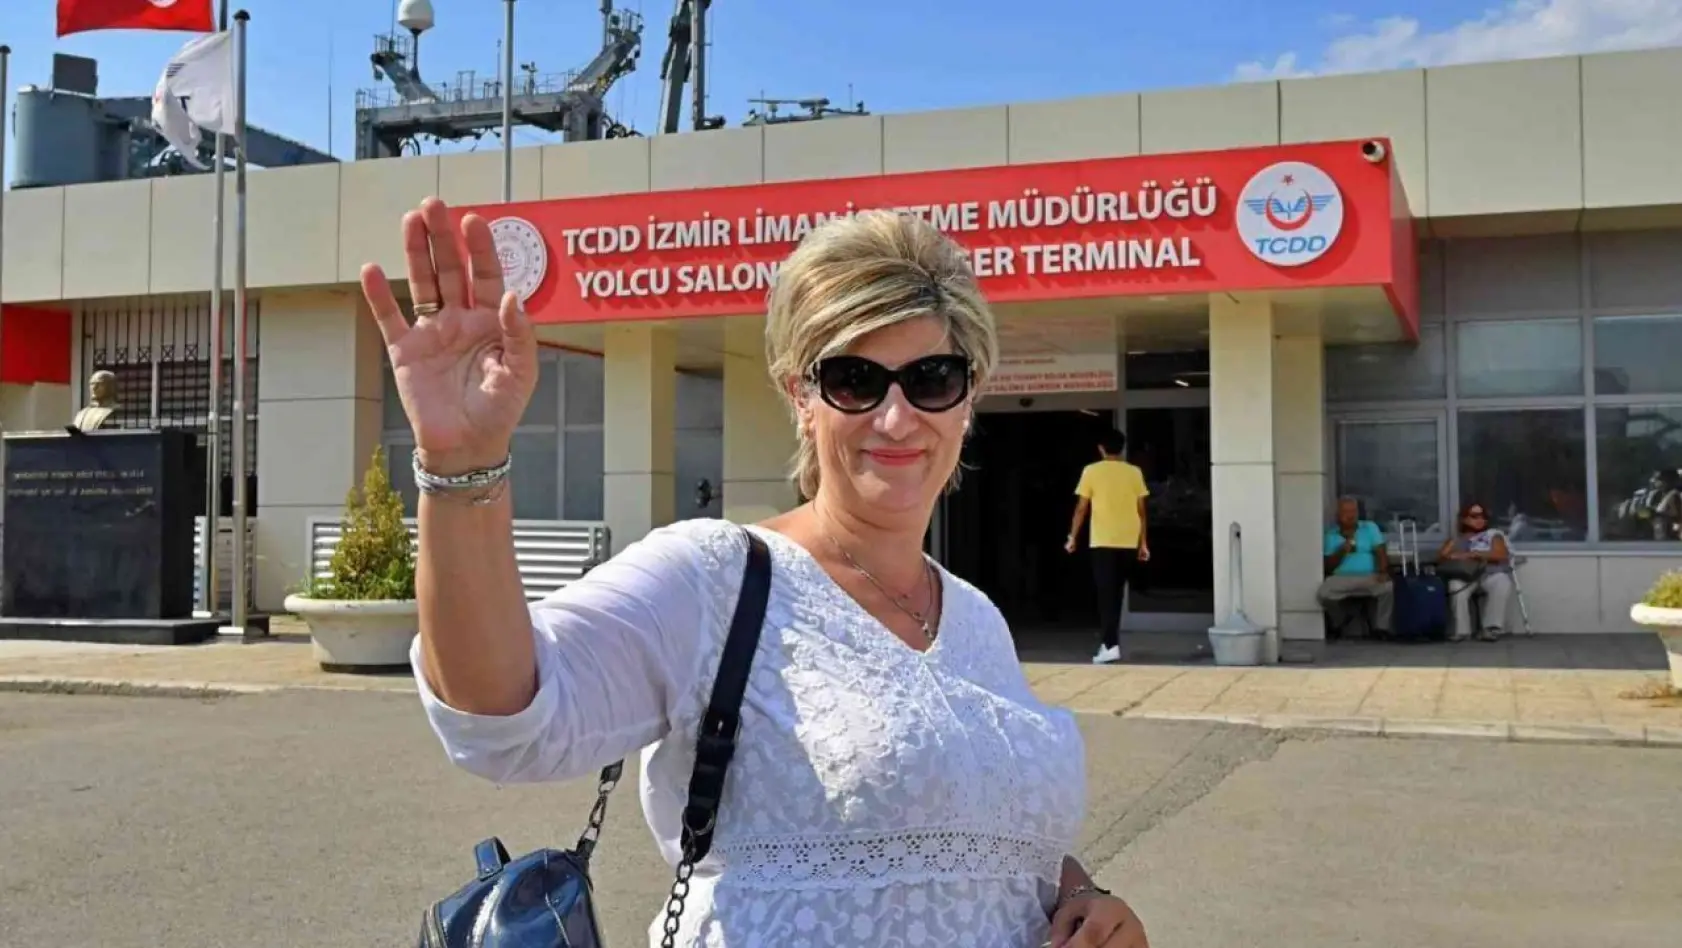 Midillili turistler, hafta sonu için İzmir'i seçti